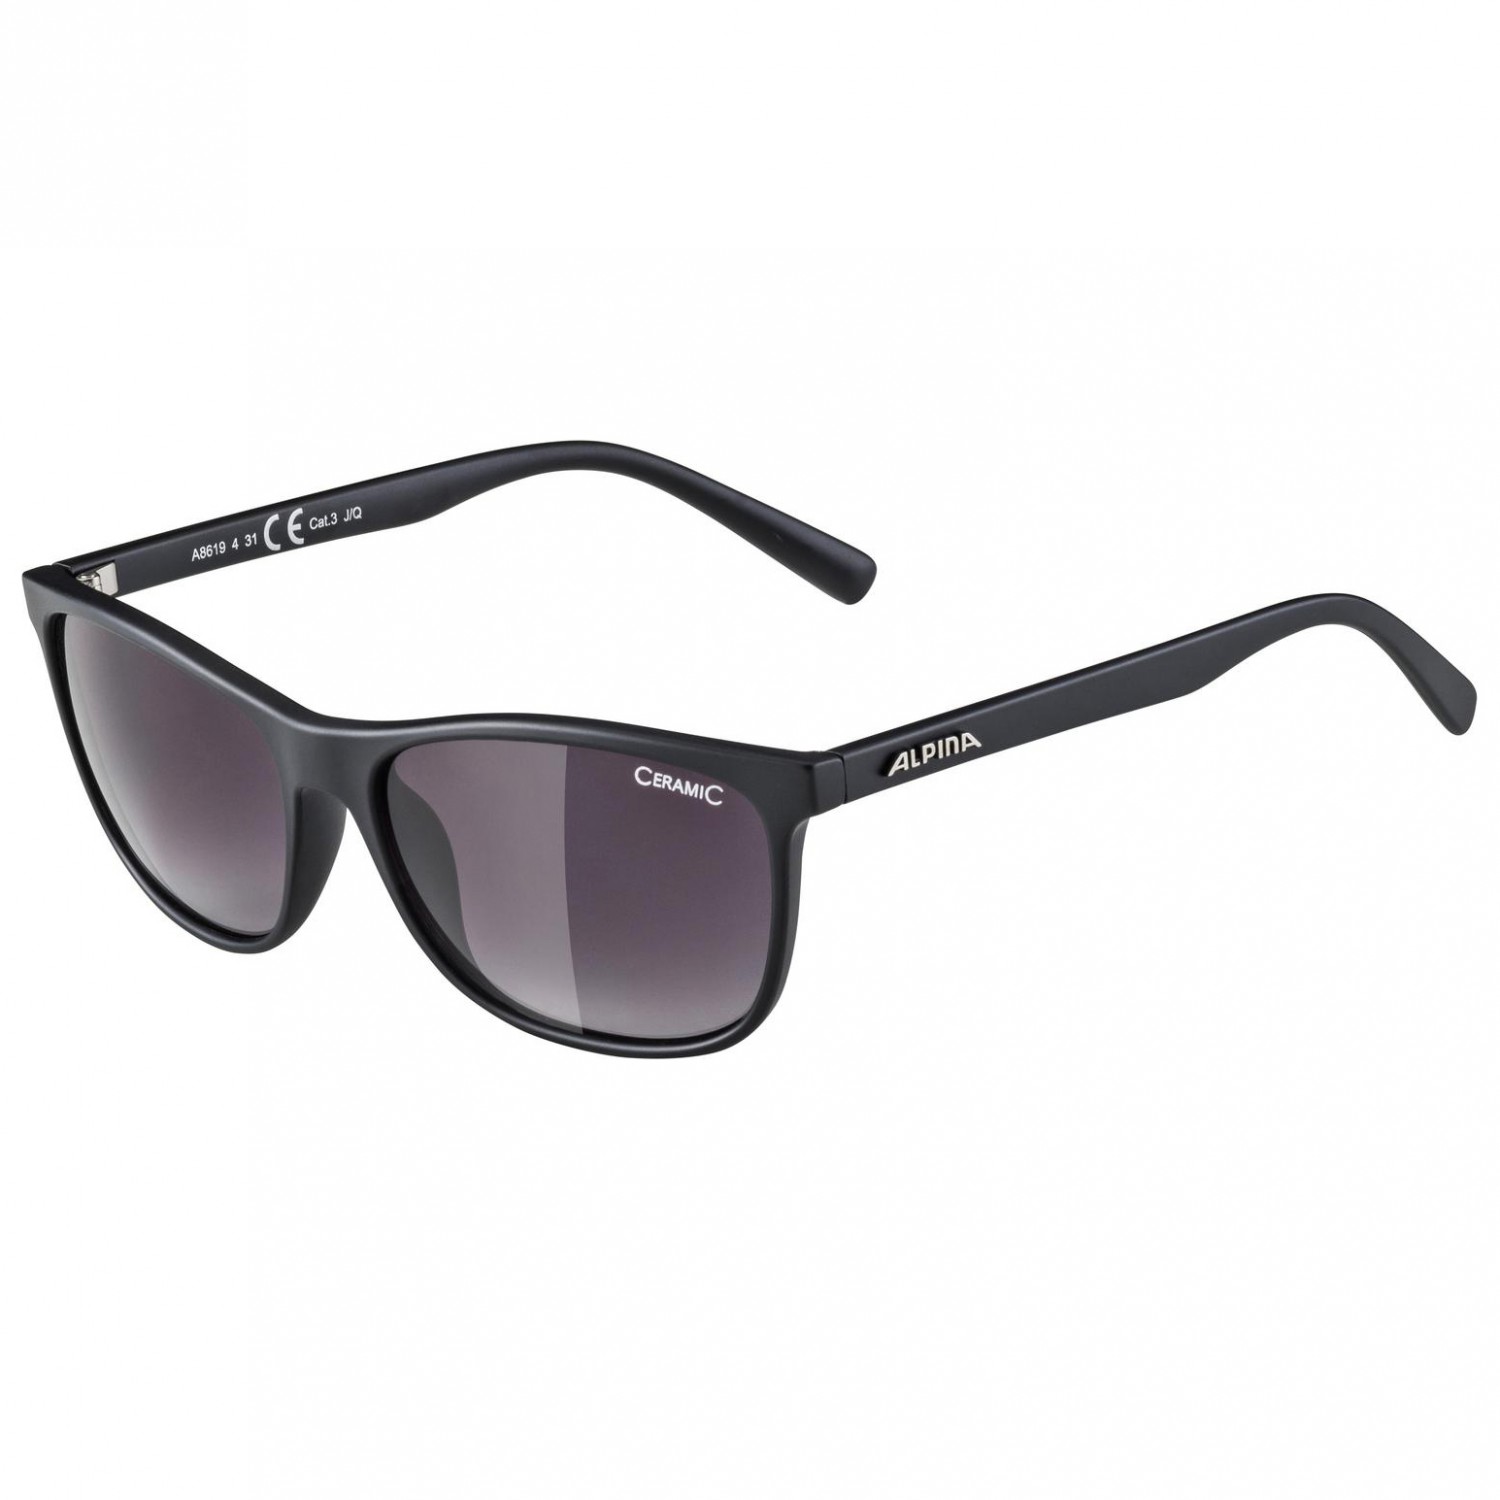 Солнцезащитные очки Alpina Jaida Ceramic S3, цвет Black Matt очки солнцезащитные alpina luzy белый пурпурный зеркальный a8571310